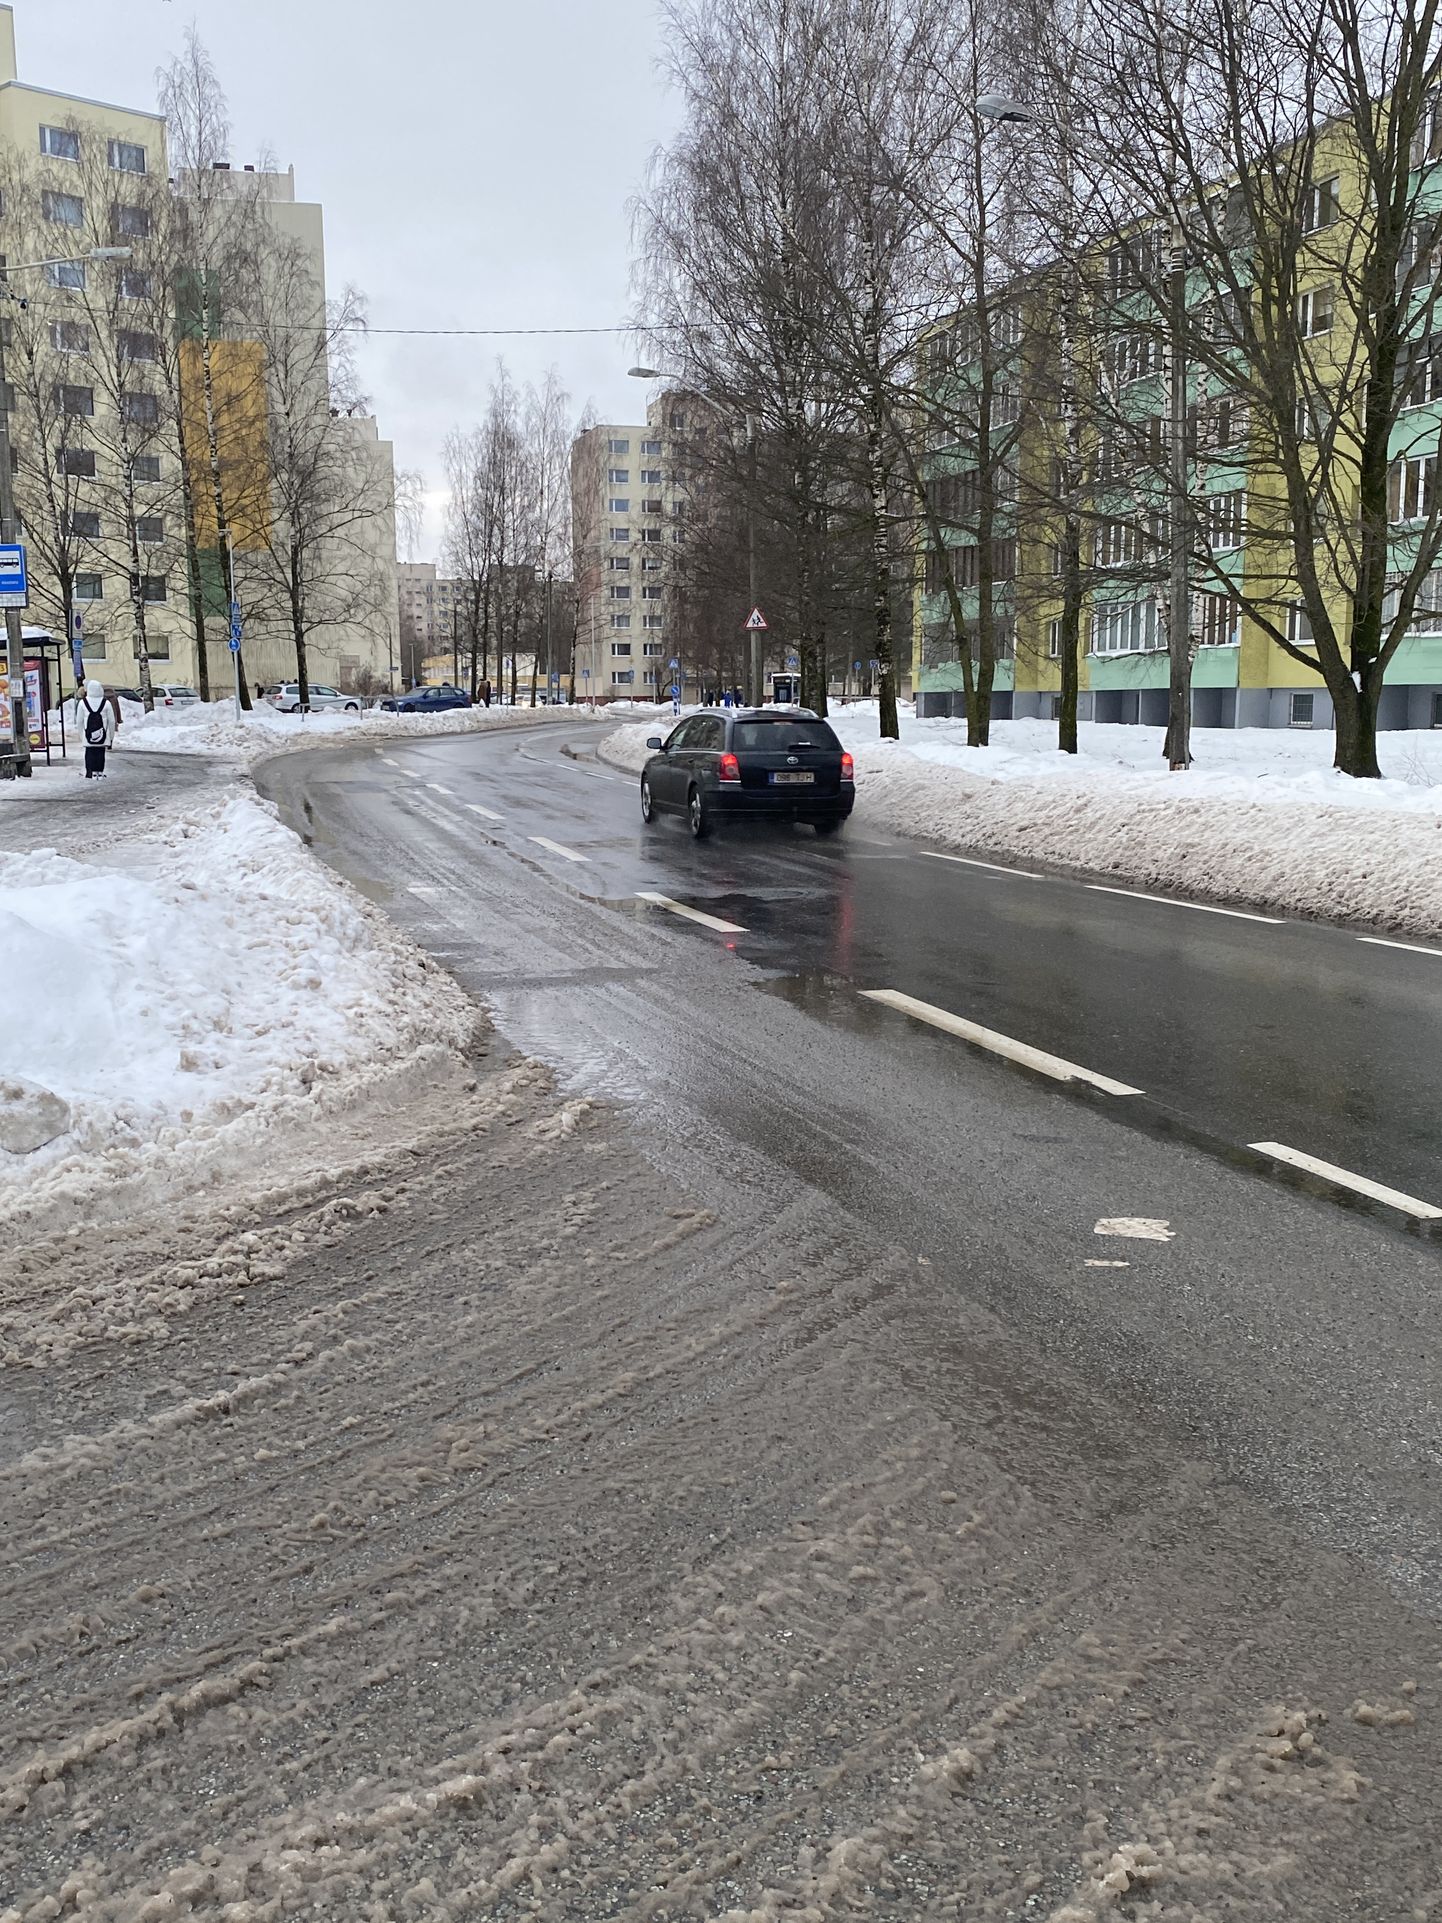 Перед остановкой Раадику, что возле школы Махтра в Таллинне, снег закрыл половину полосы движения, вынуждая автобусы и другой транспорт выезжать на встречную полосу.